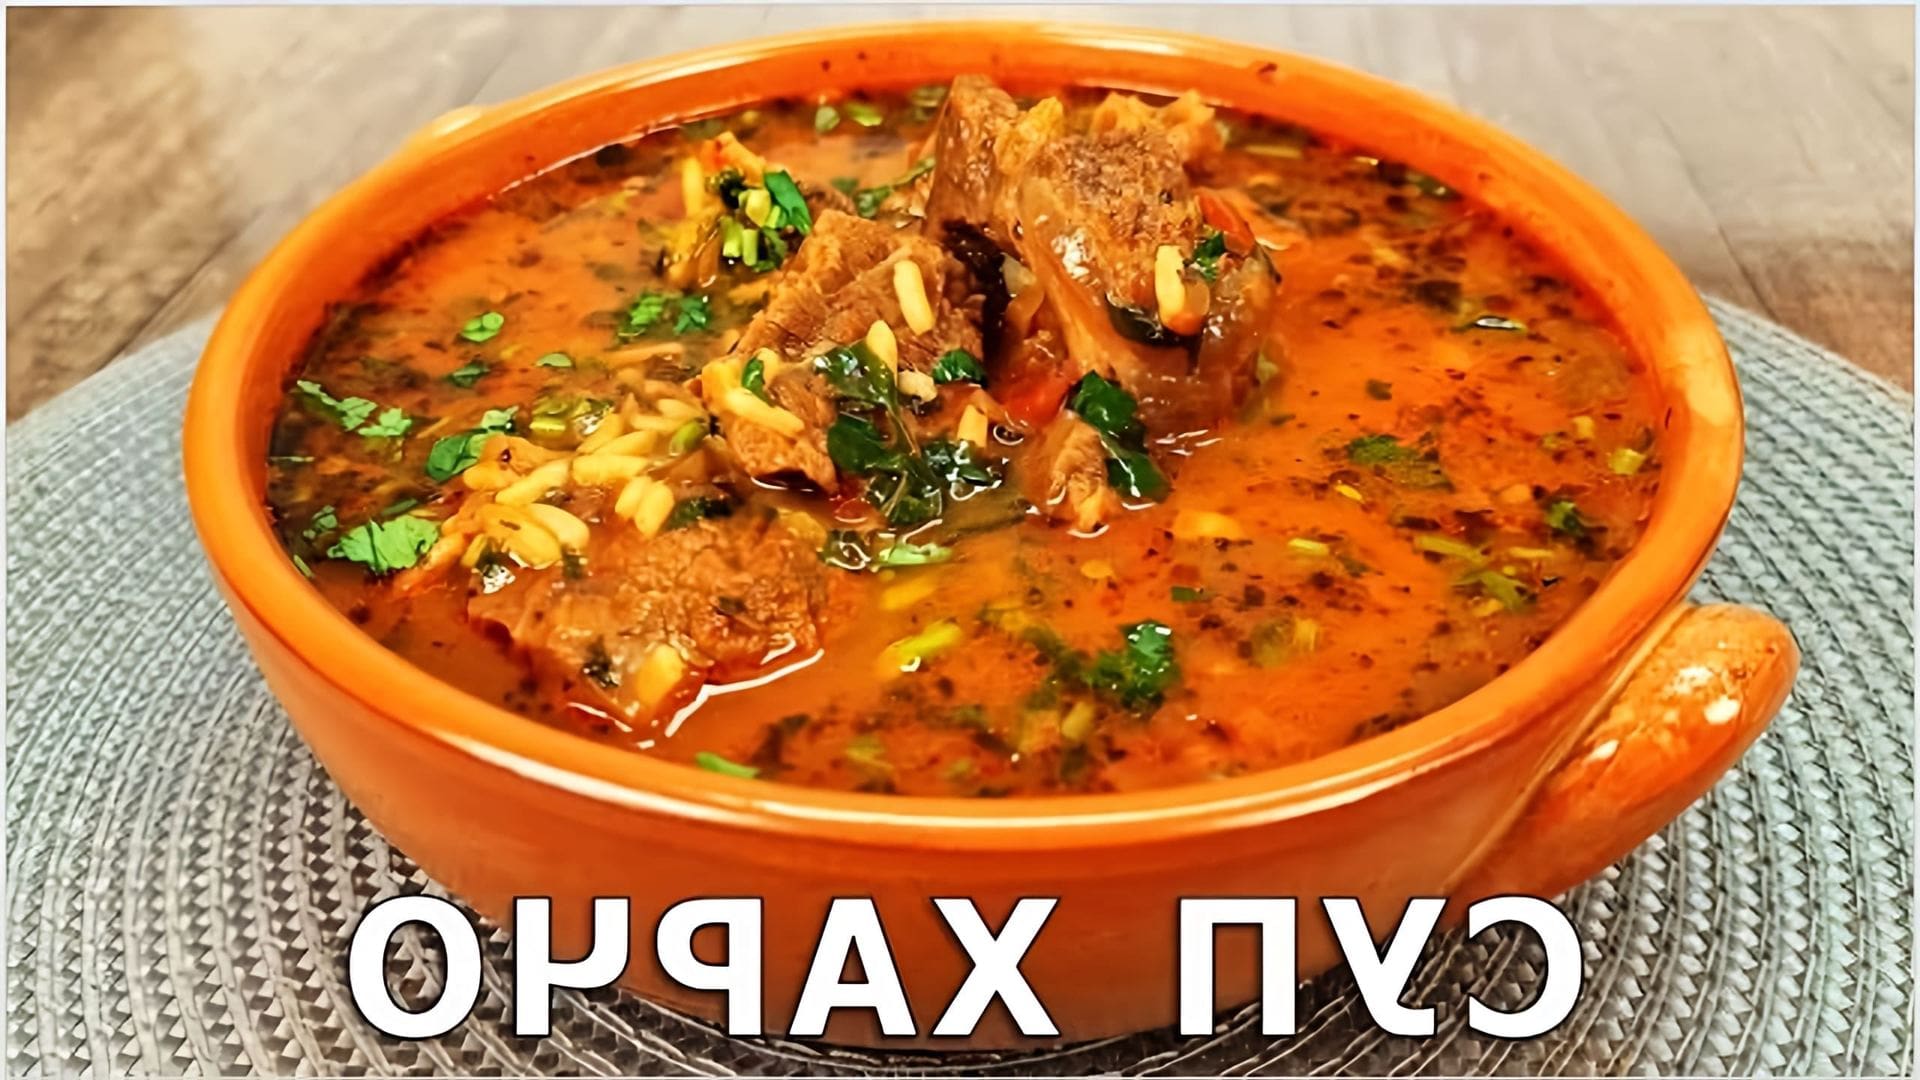 В этом видео демонстрируется процесс приготовления супа харчо, который является традиционным грузинским блюдом